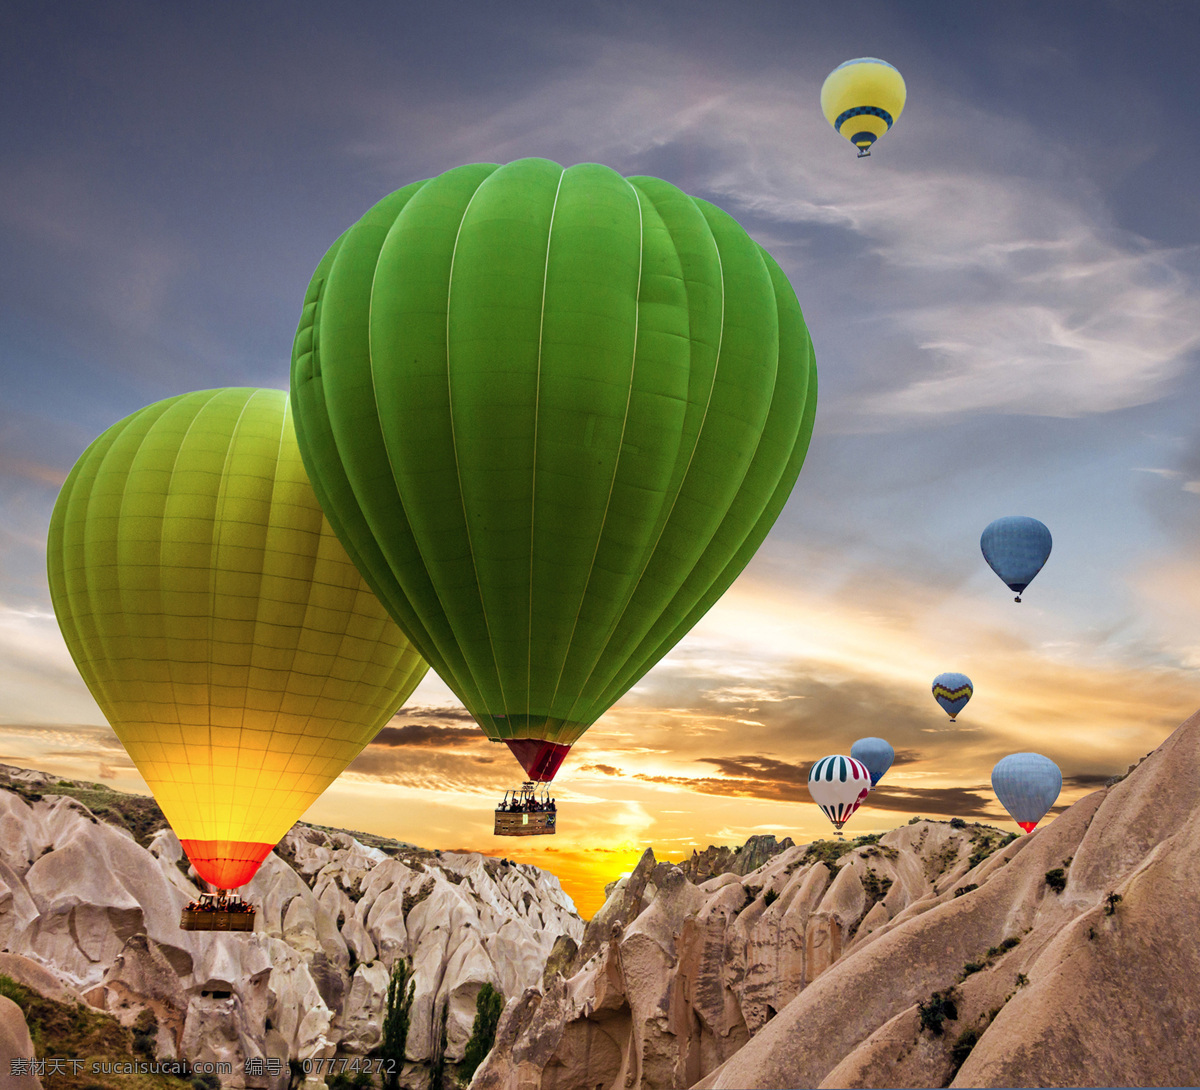 卡 帕多 西亚 热气球 美景 卡帕多西亚 岩石风景 土耳其 旅游景点 美丽风景 自然风光 其他类别 生活百科